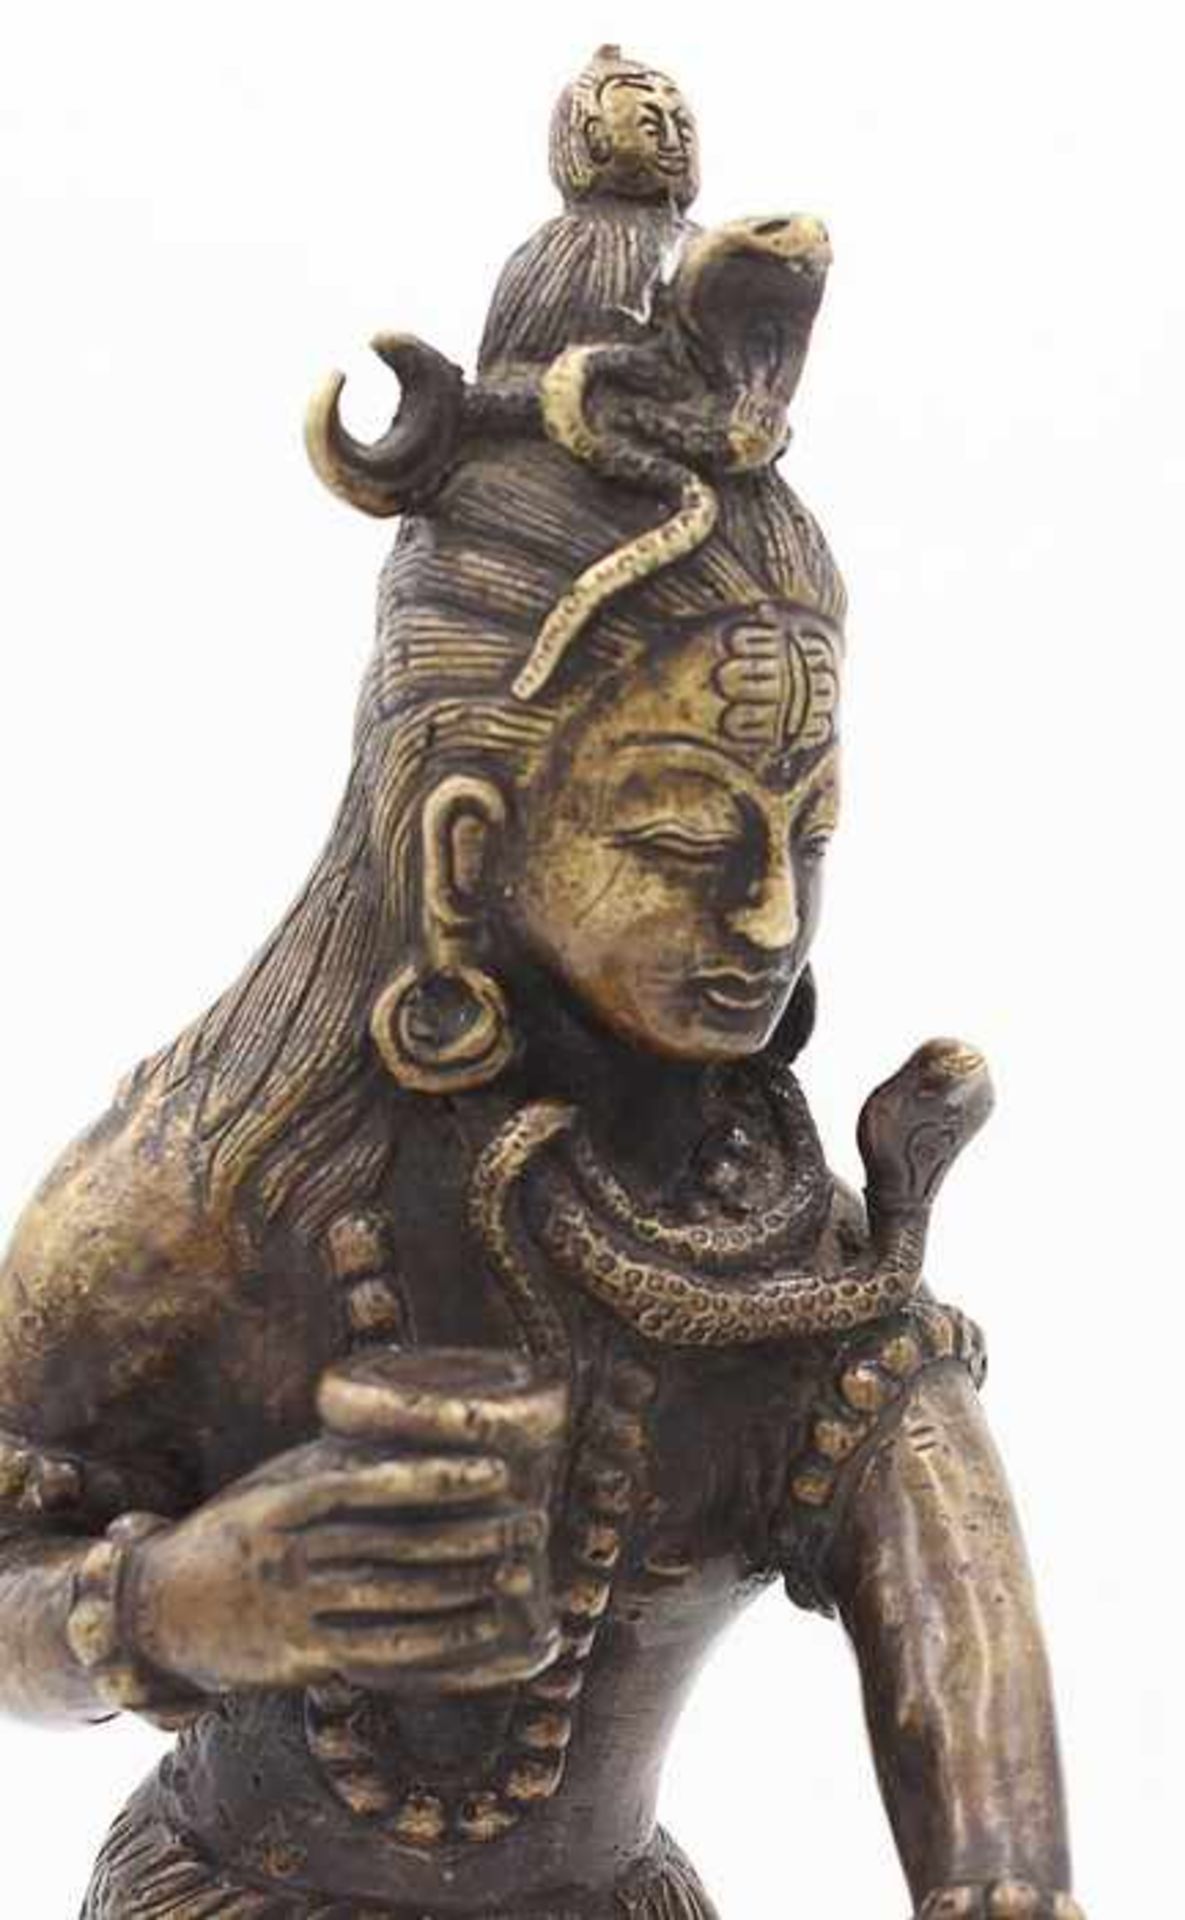 Figur - Hinduismus20.Jh., Bronze, patiniert, vollplastische Figur v. auf dem Tigerfell tanzenden - Bild 4 aus 4